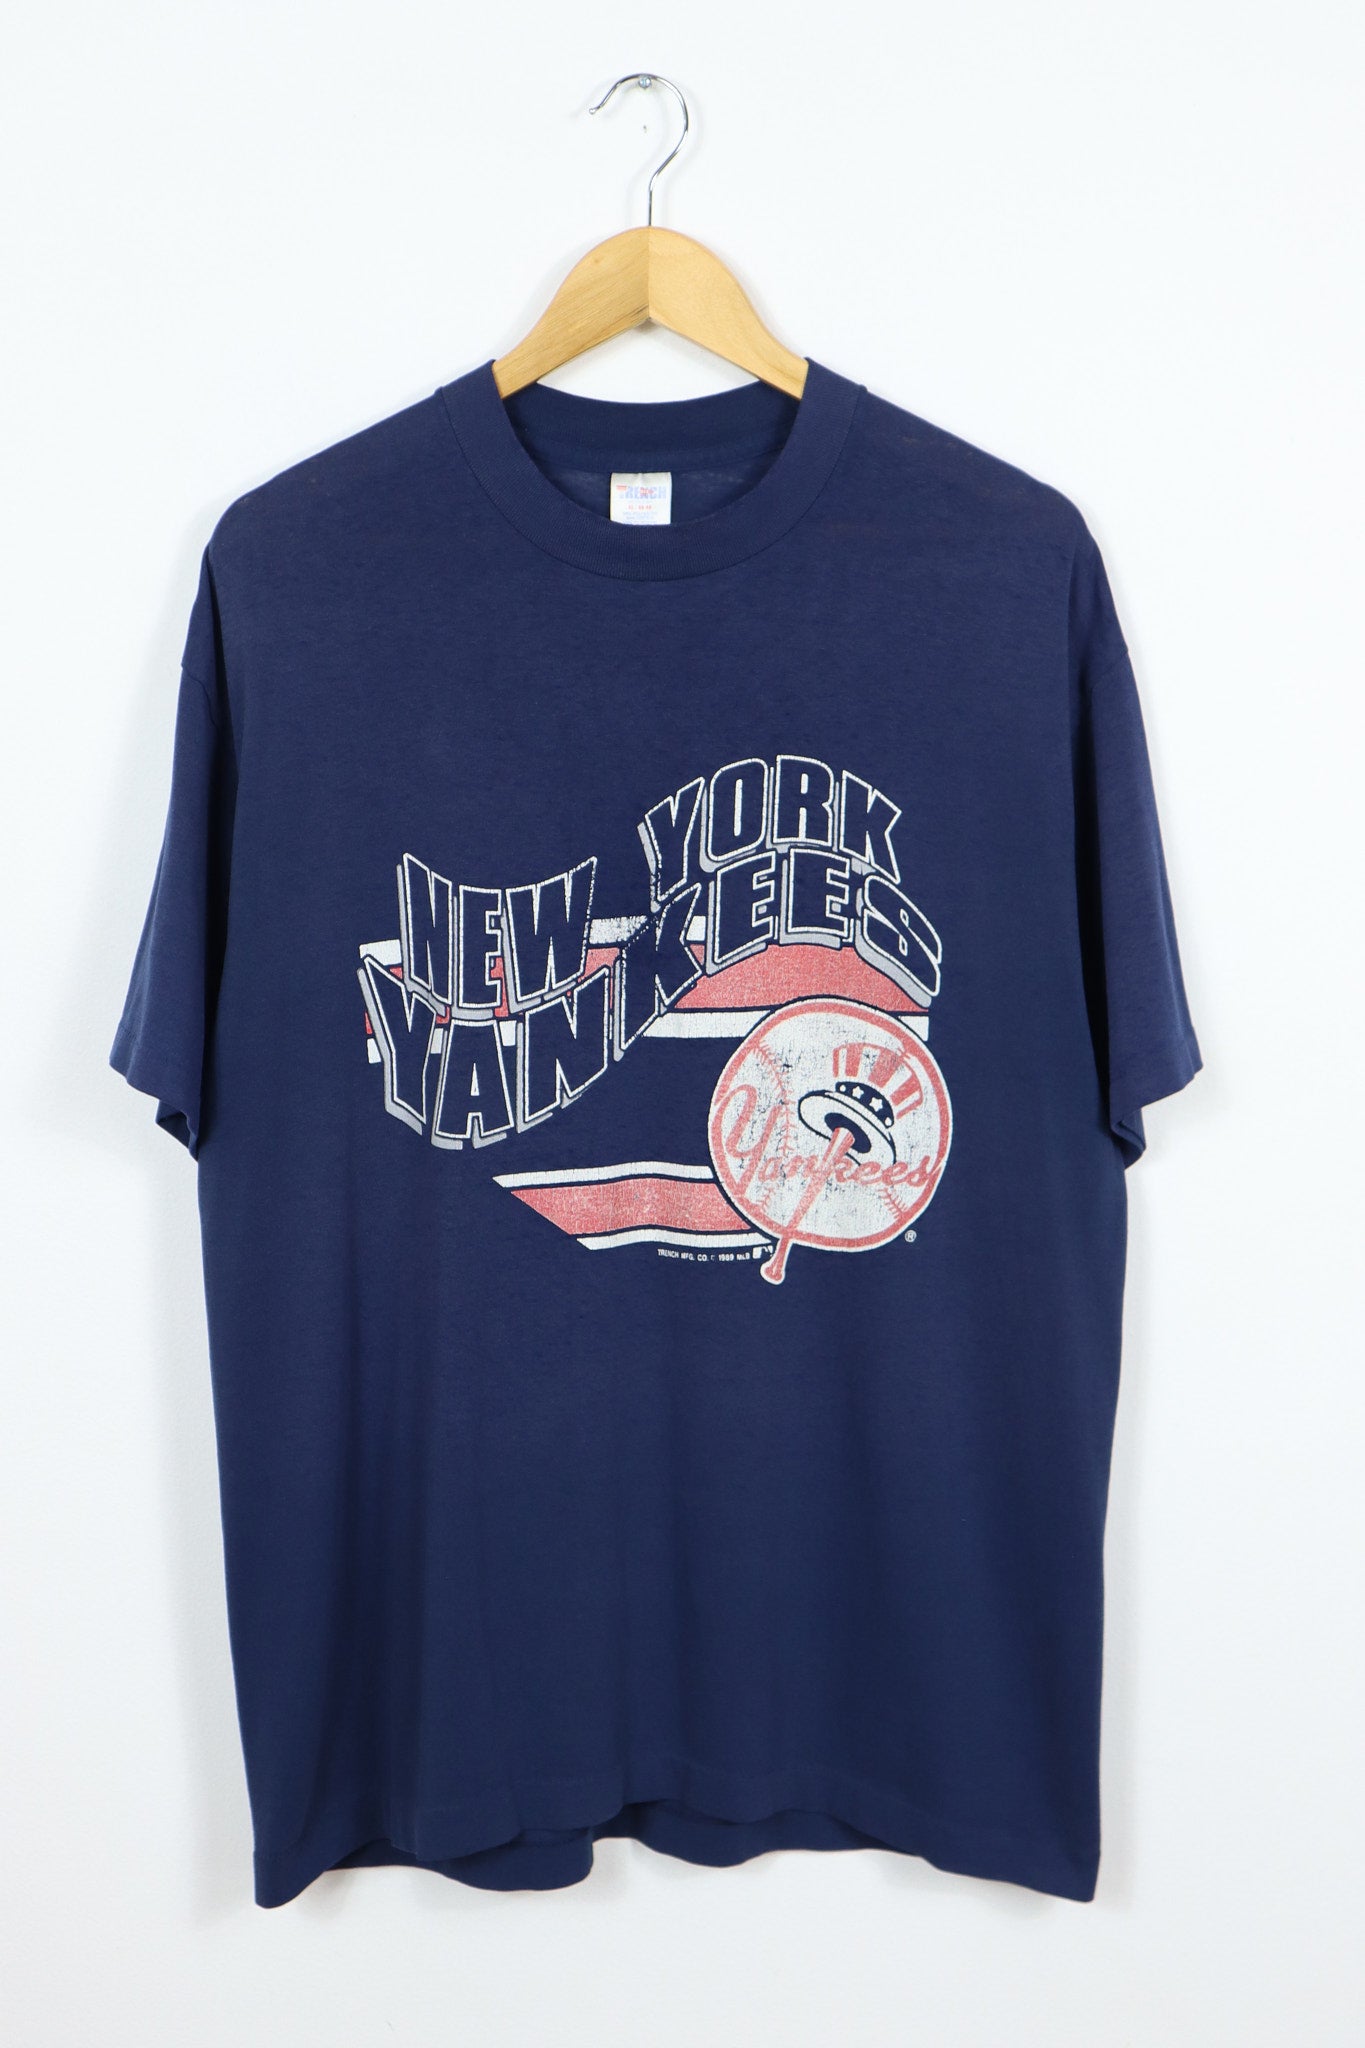 Vintage 1989 New York Yankees Tee